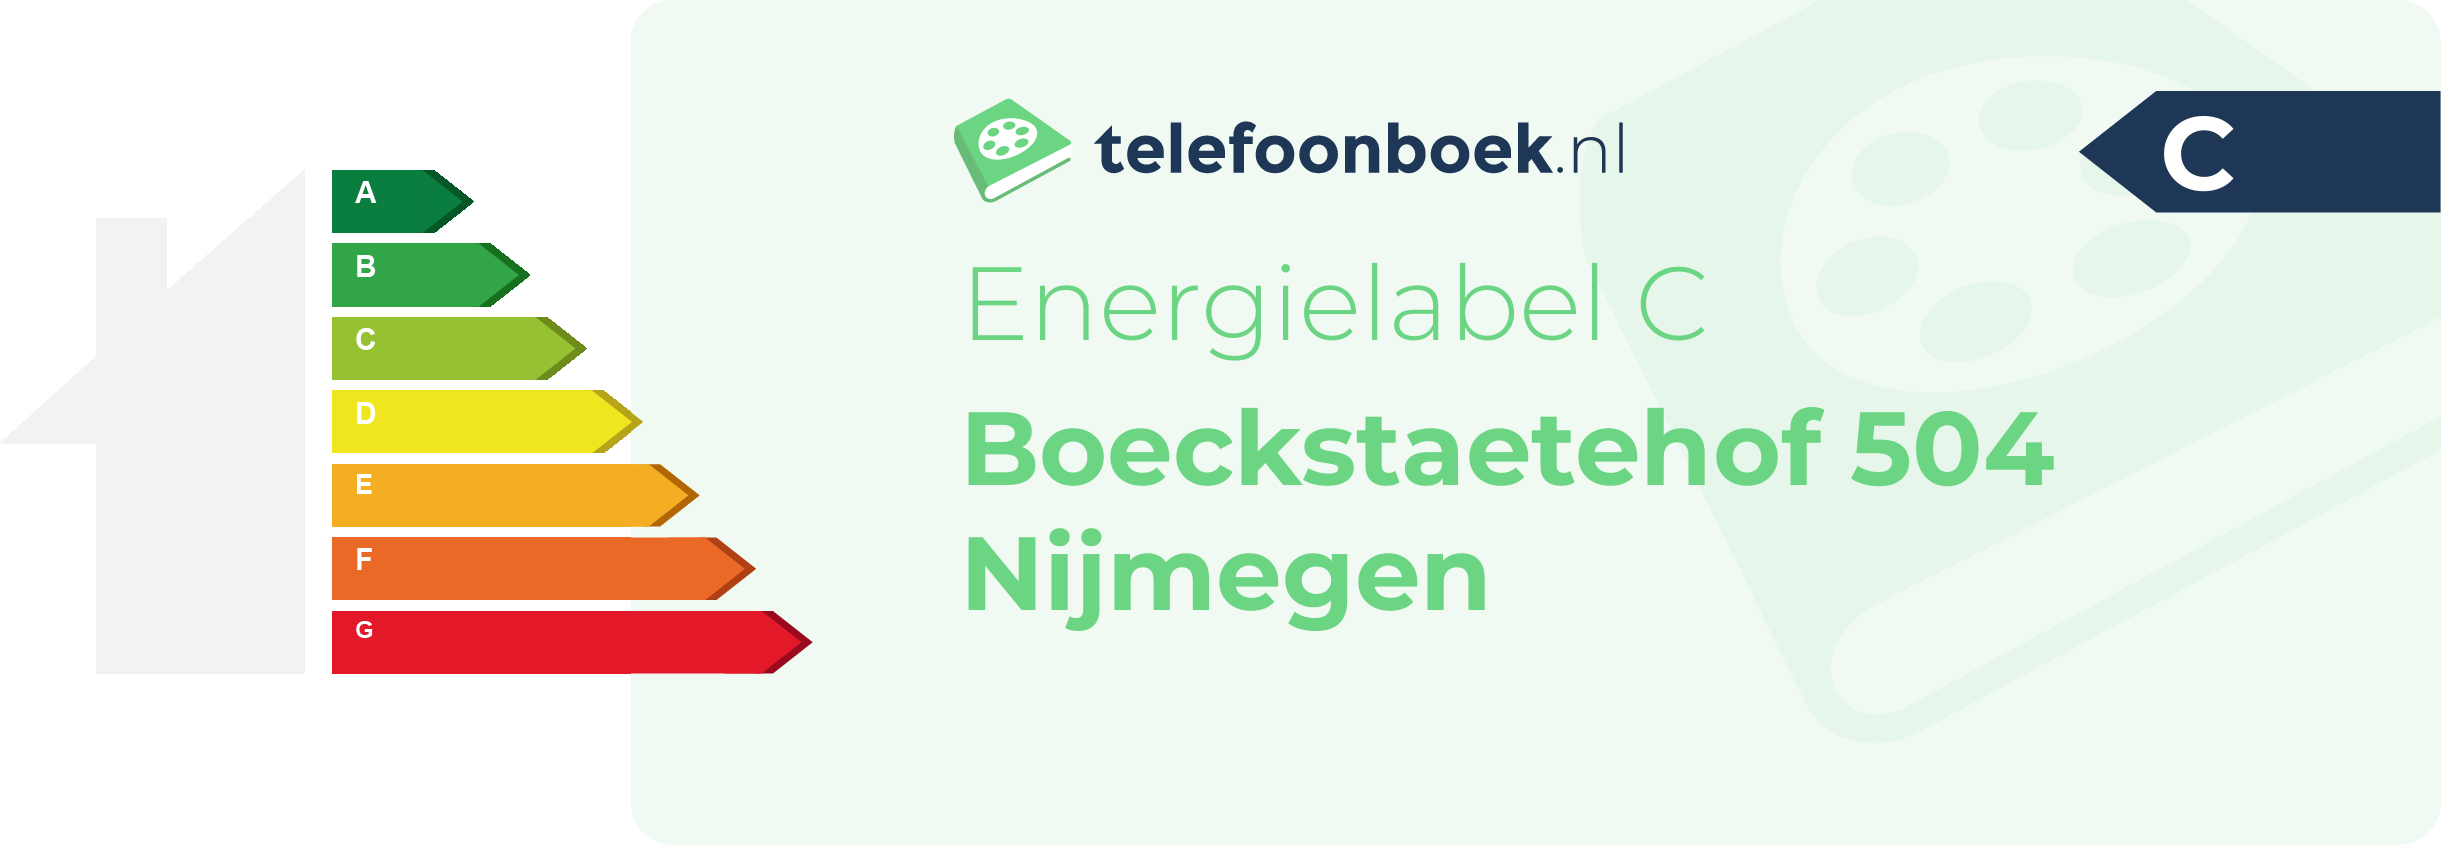 Energielabel Boeckstaetehof 504 Nijmegen